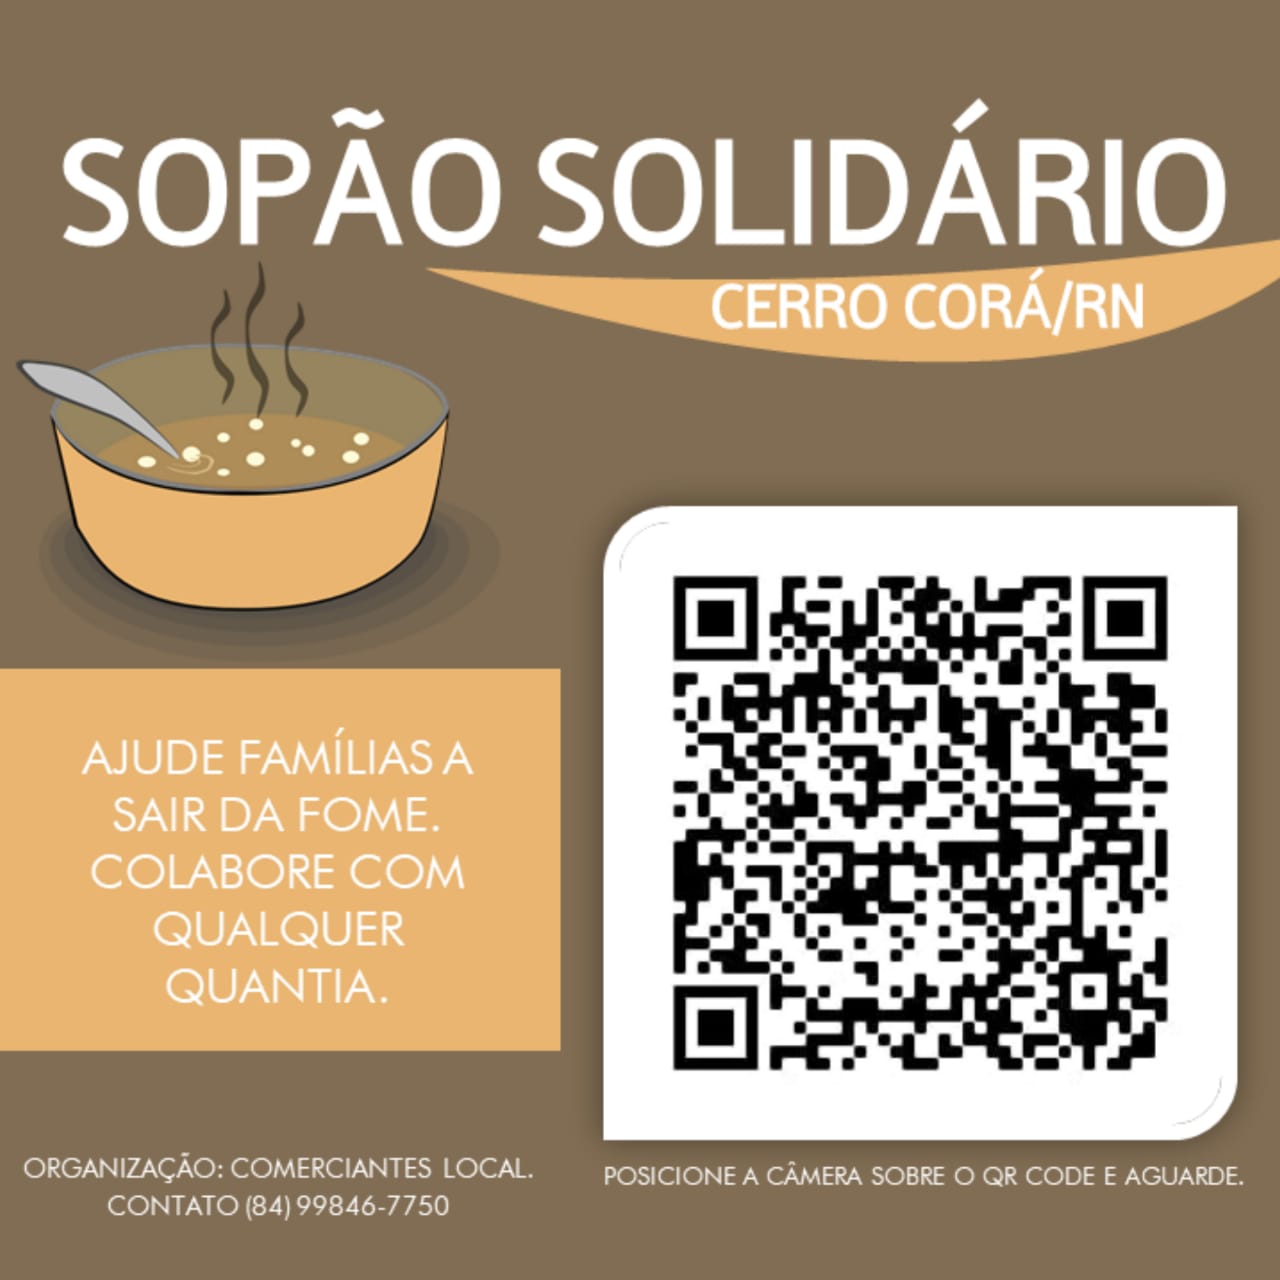 Participe da campanha do sopão solidário em Cerro Corá